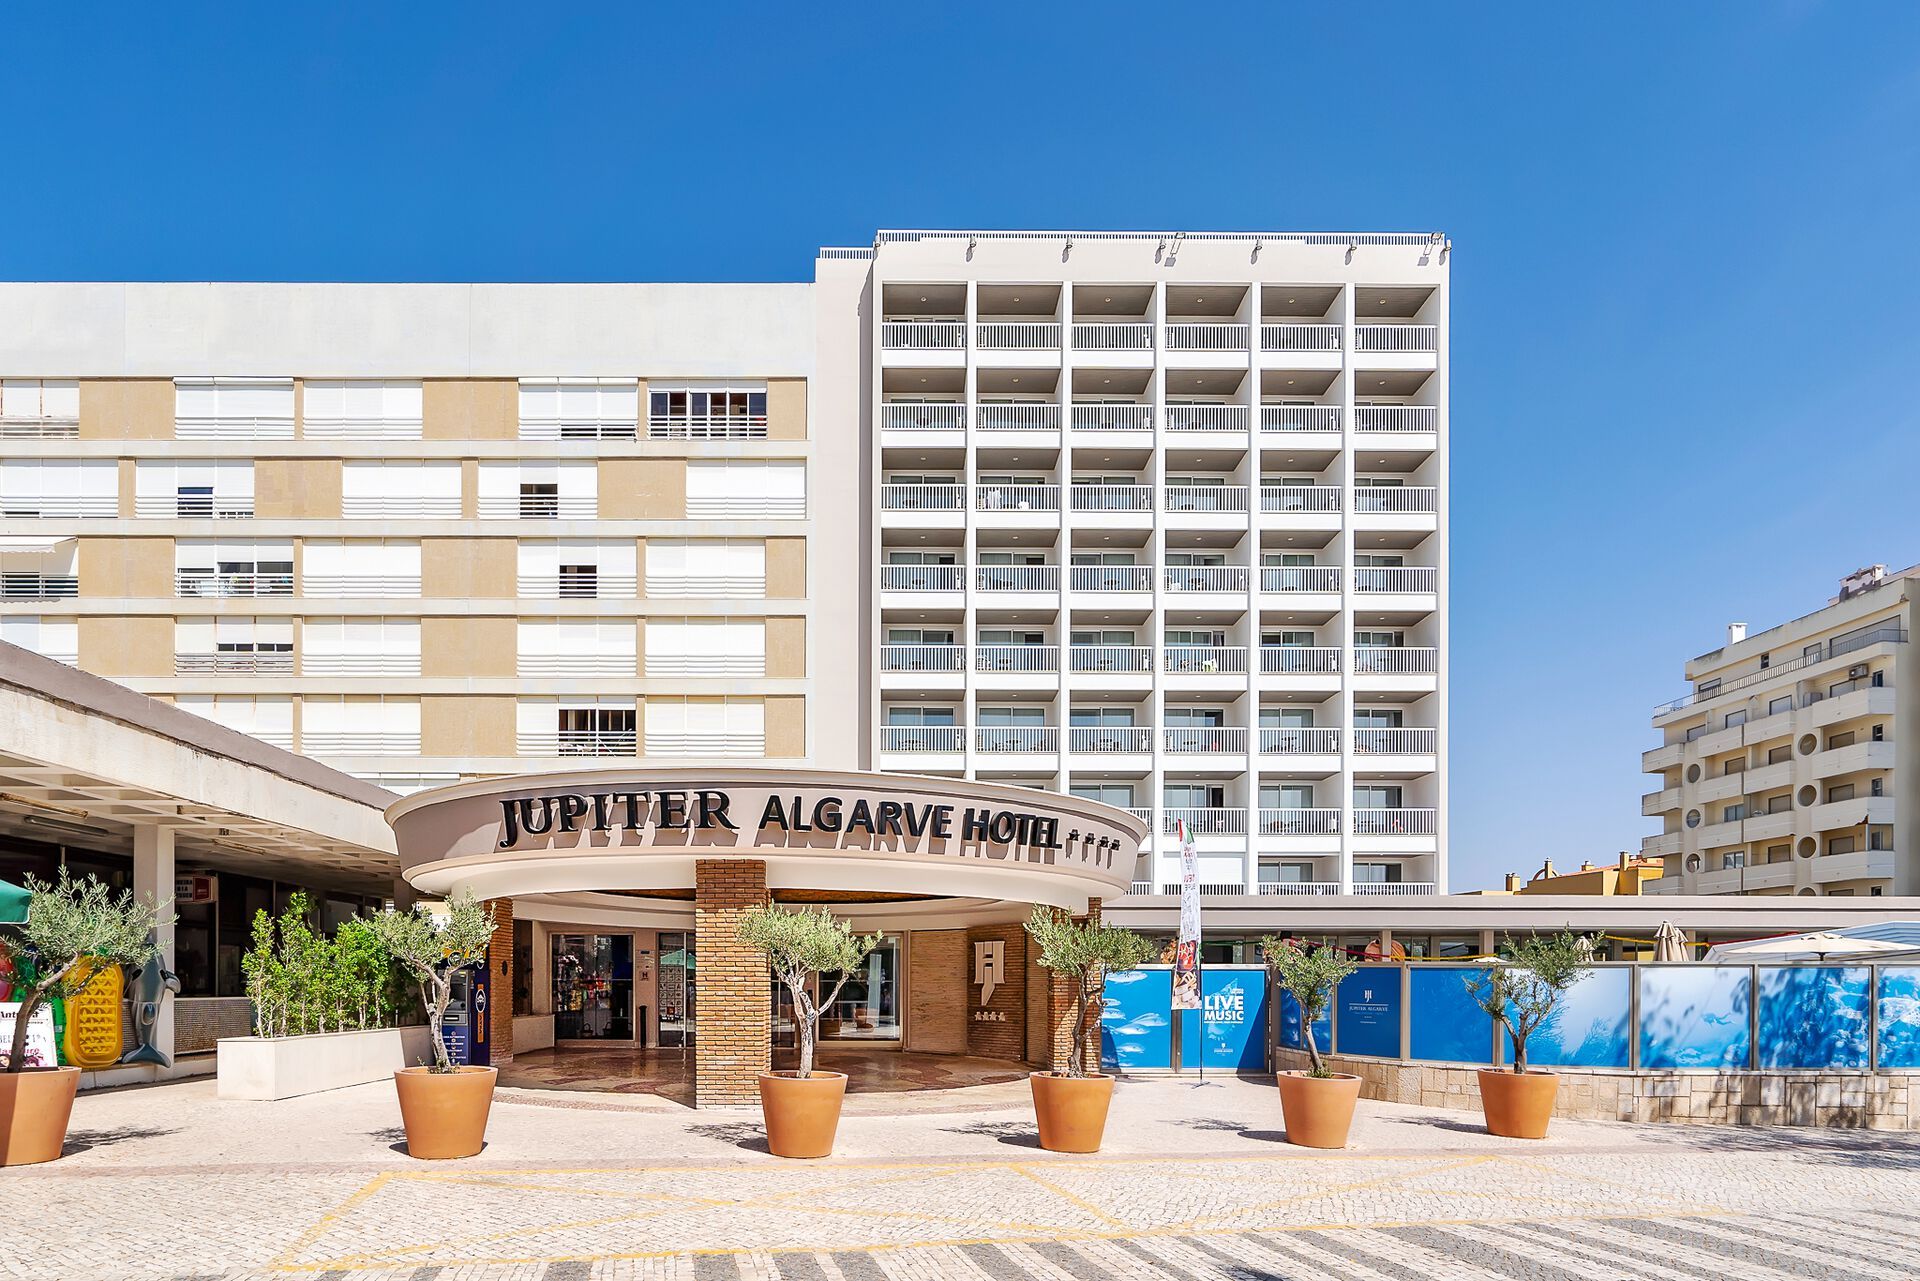 Portugal - Algarve - Jupiter Algarve Hotel 4*